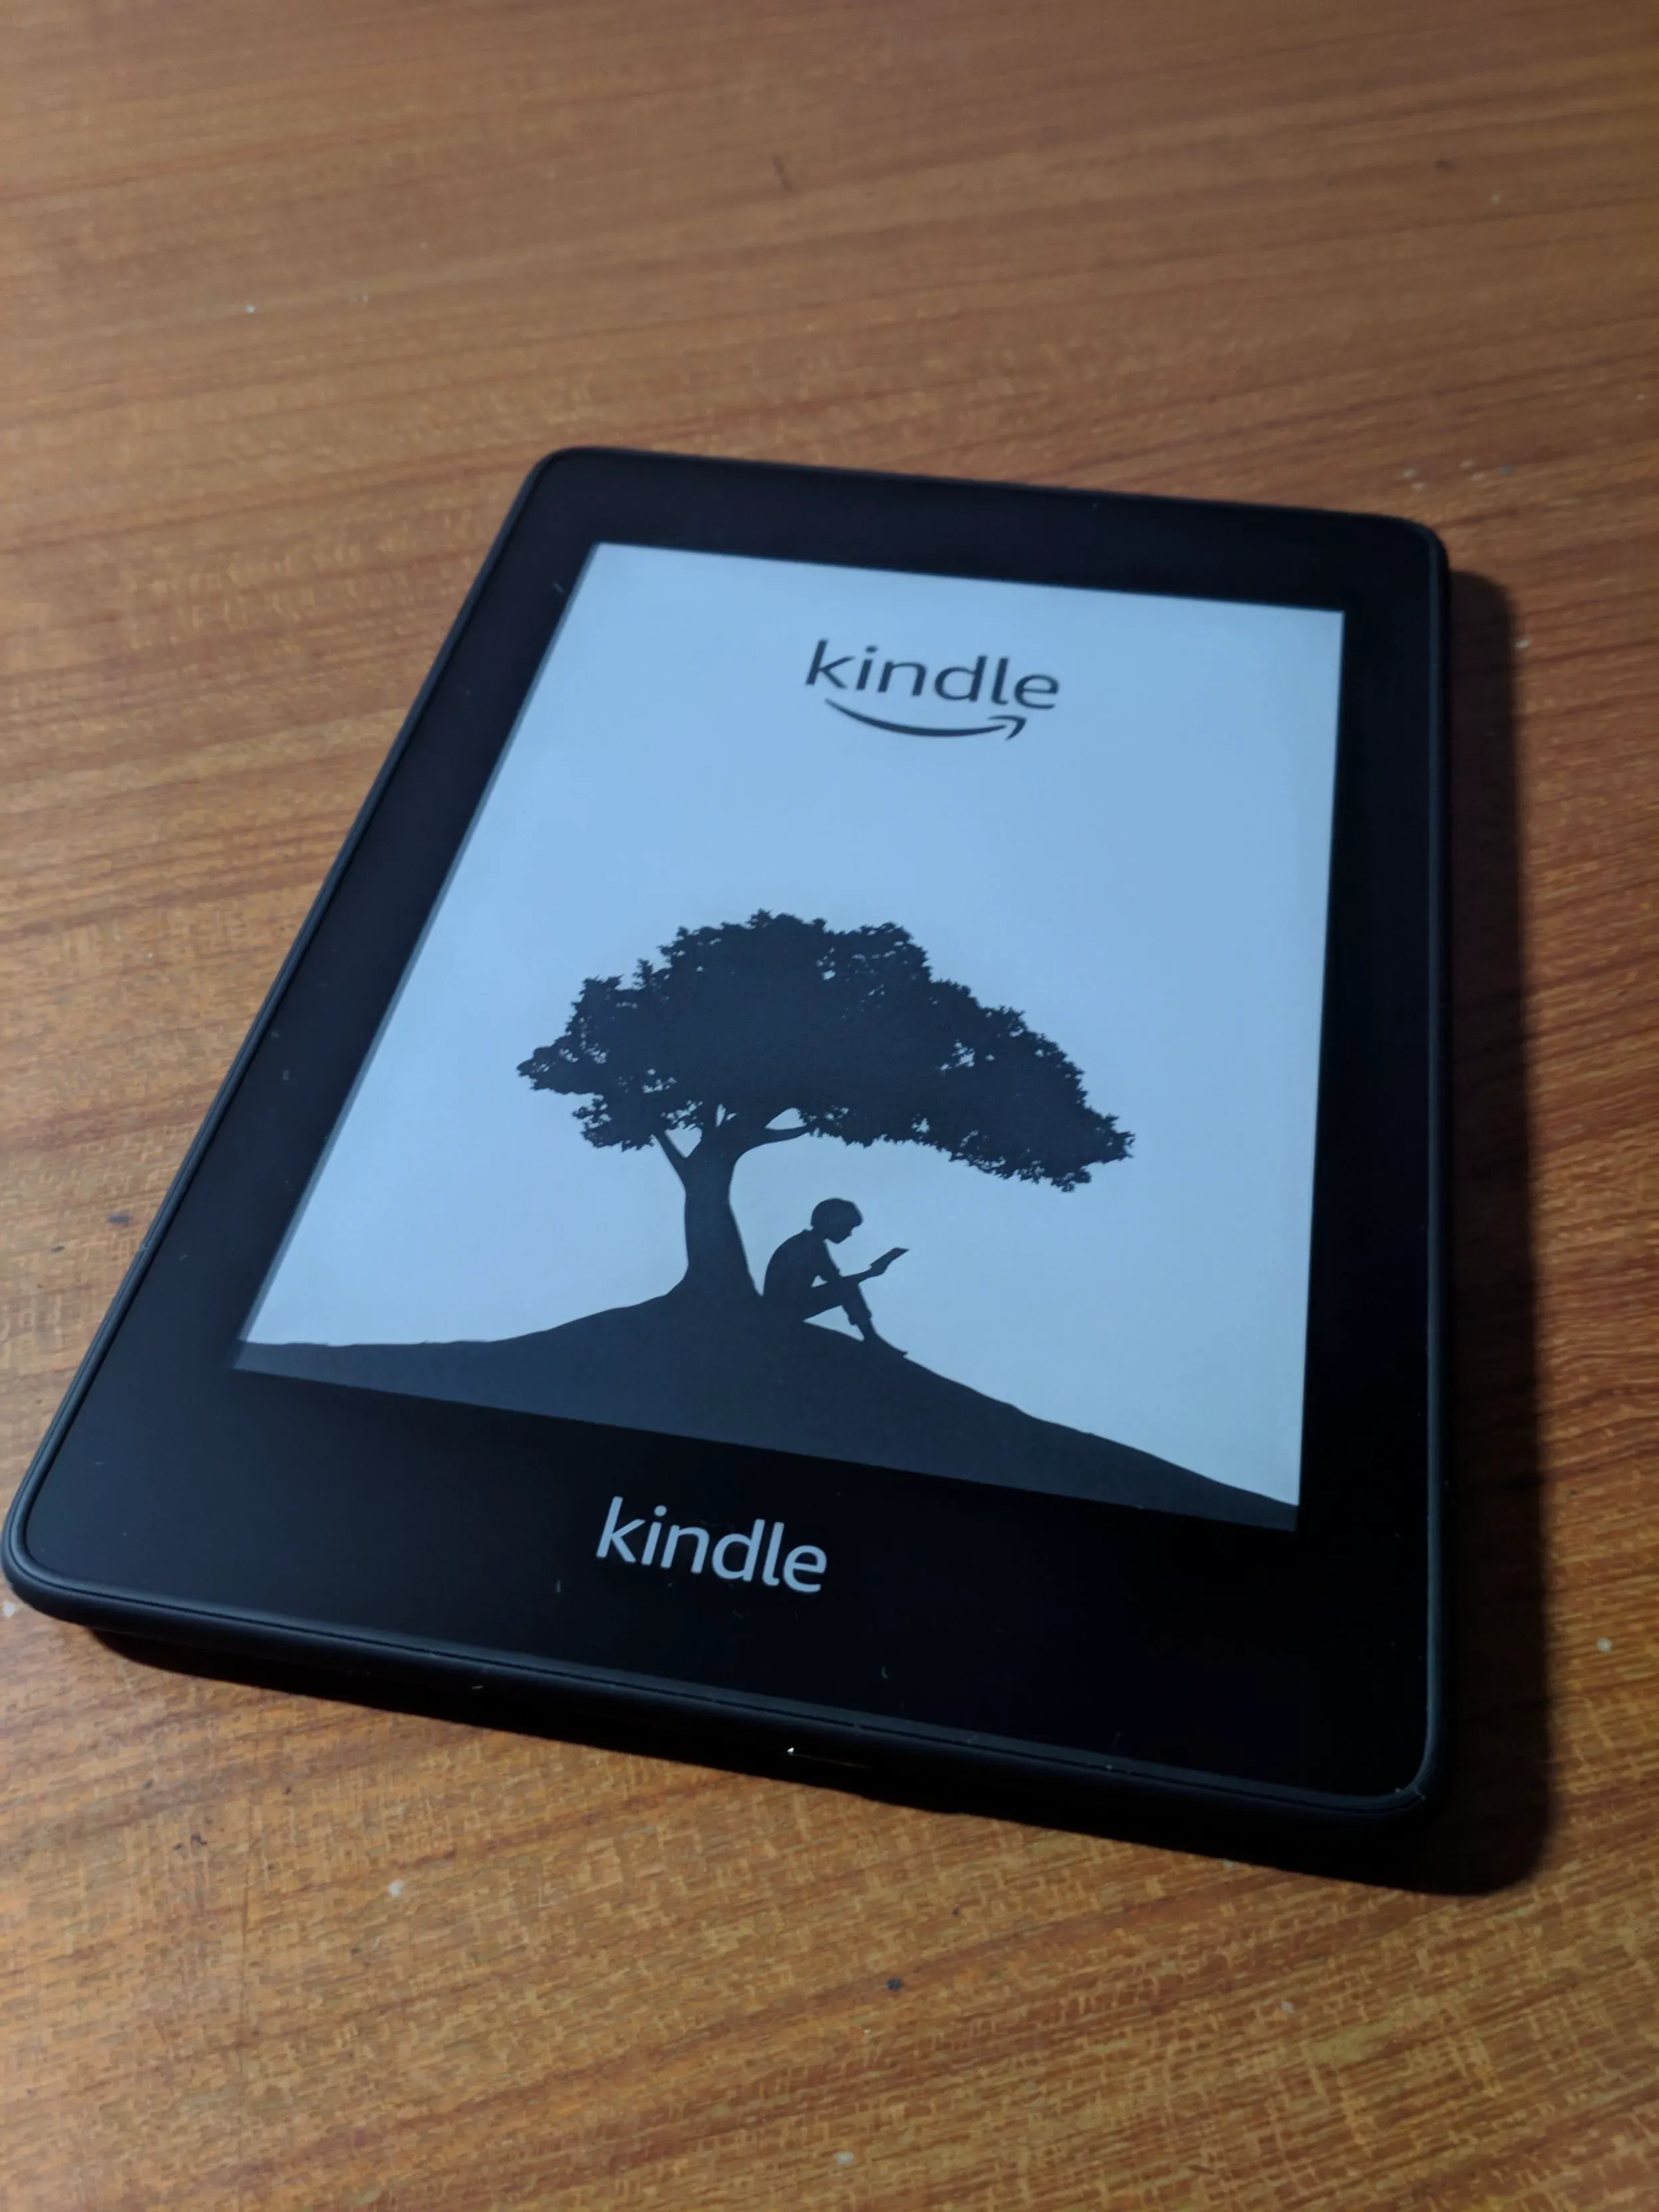 开机界面，经典的一棵树下坐着一个小孩手里拿着 Kindle 看书的 Logo